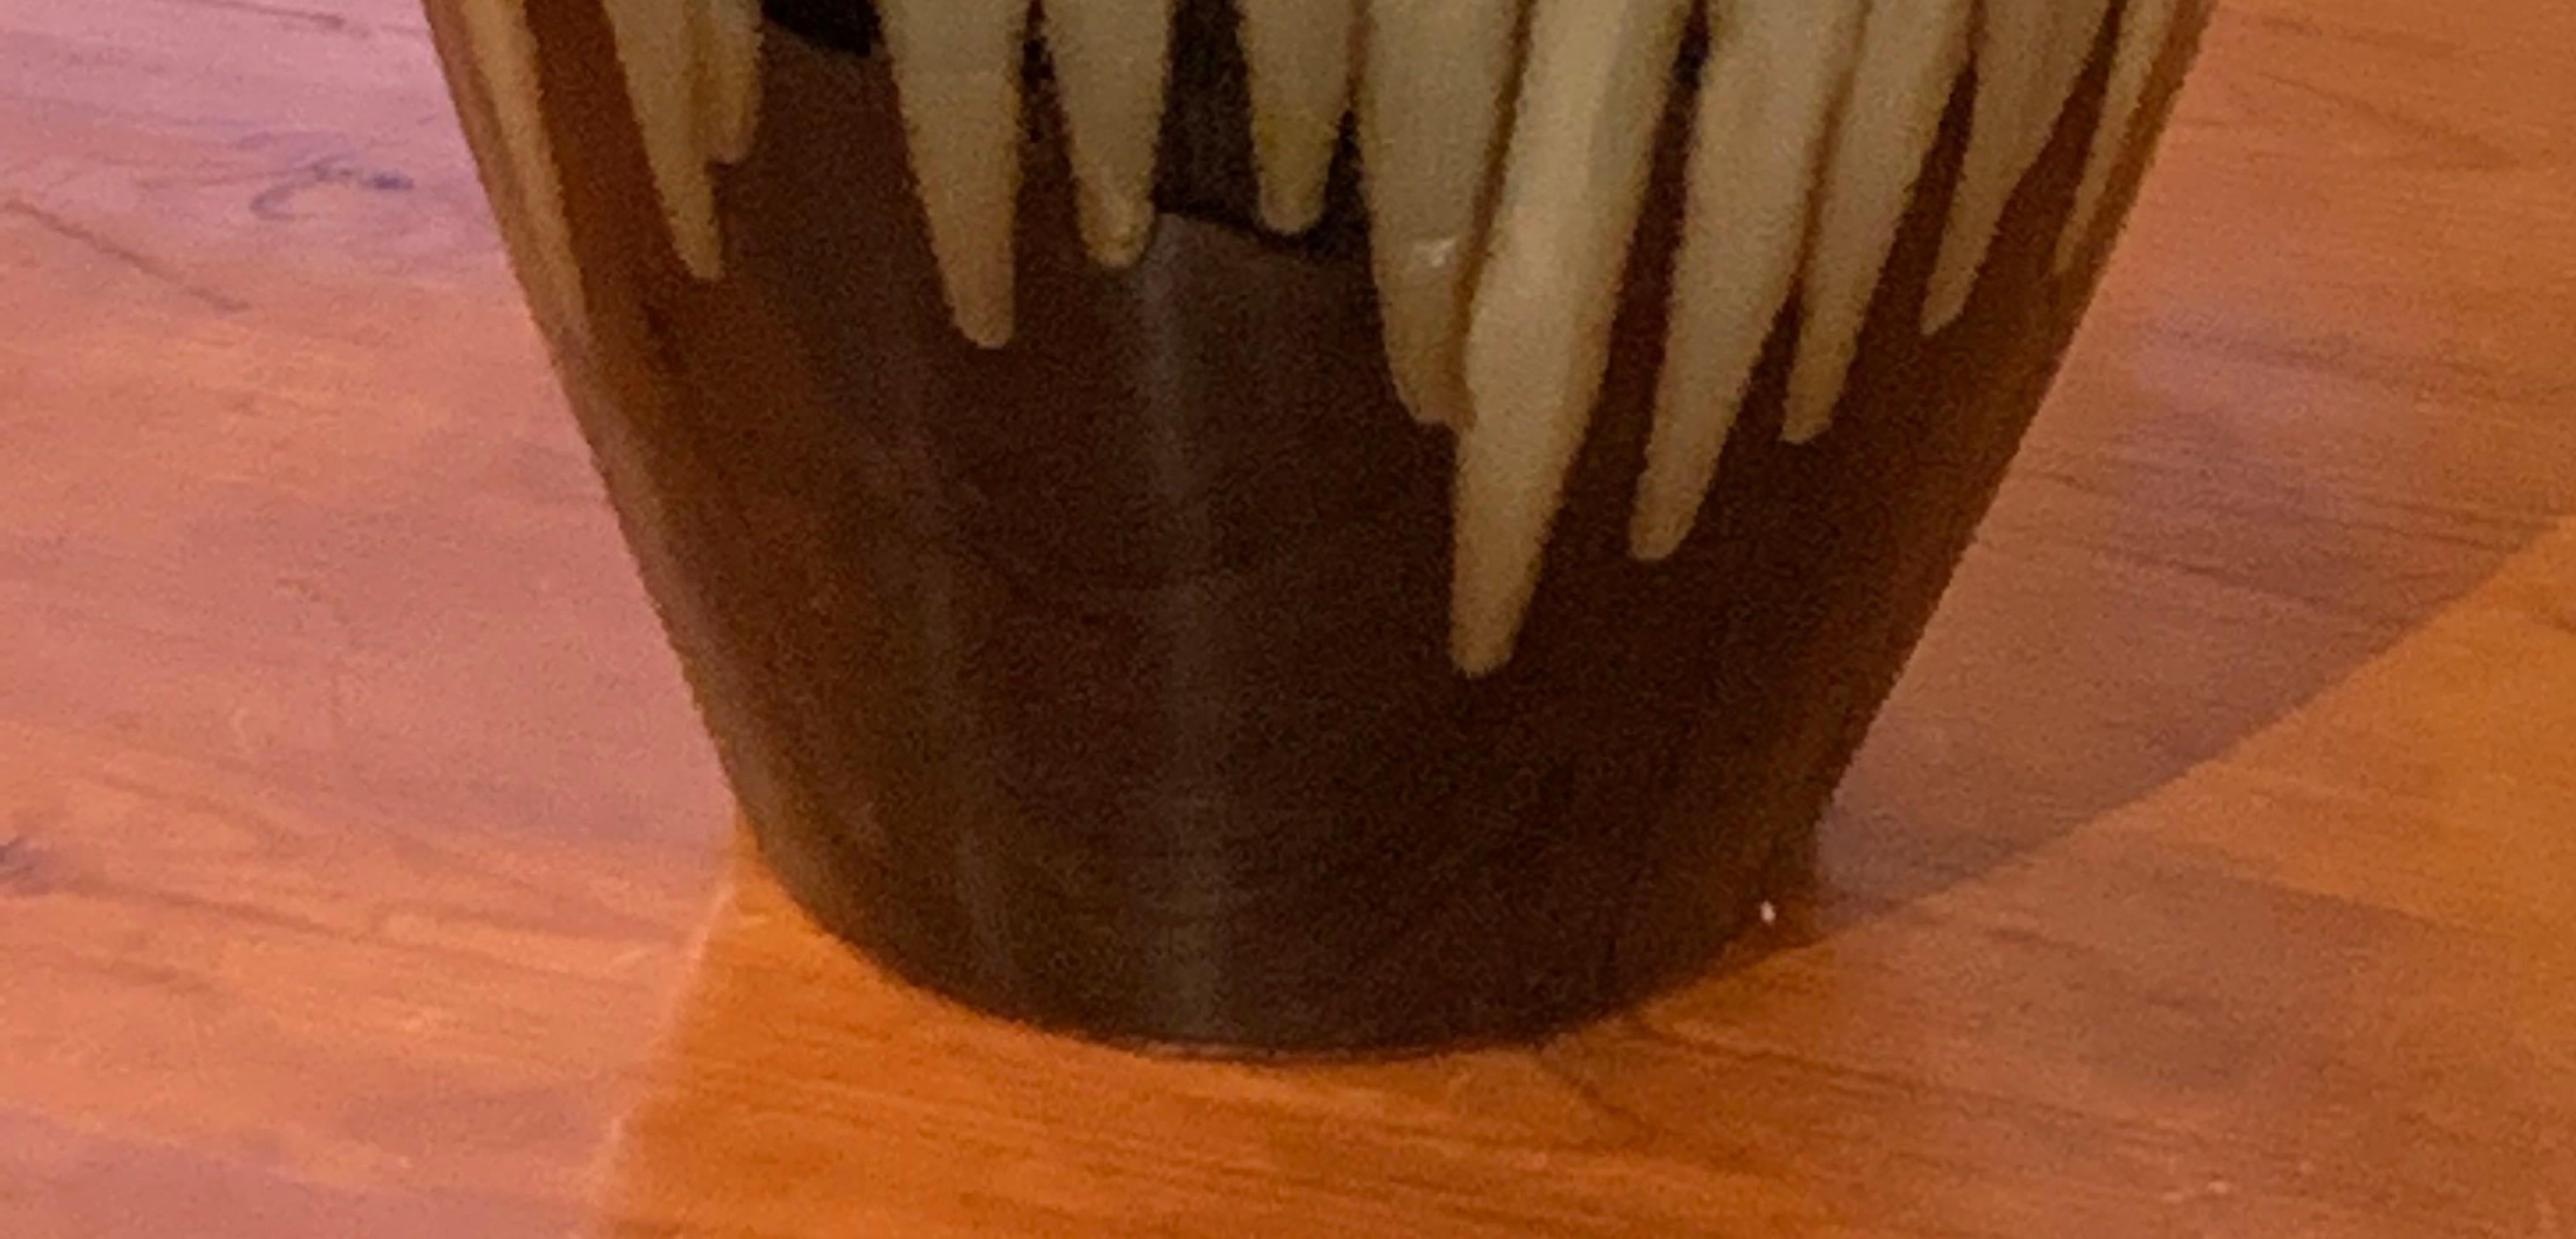 dark brown ceramic vase